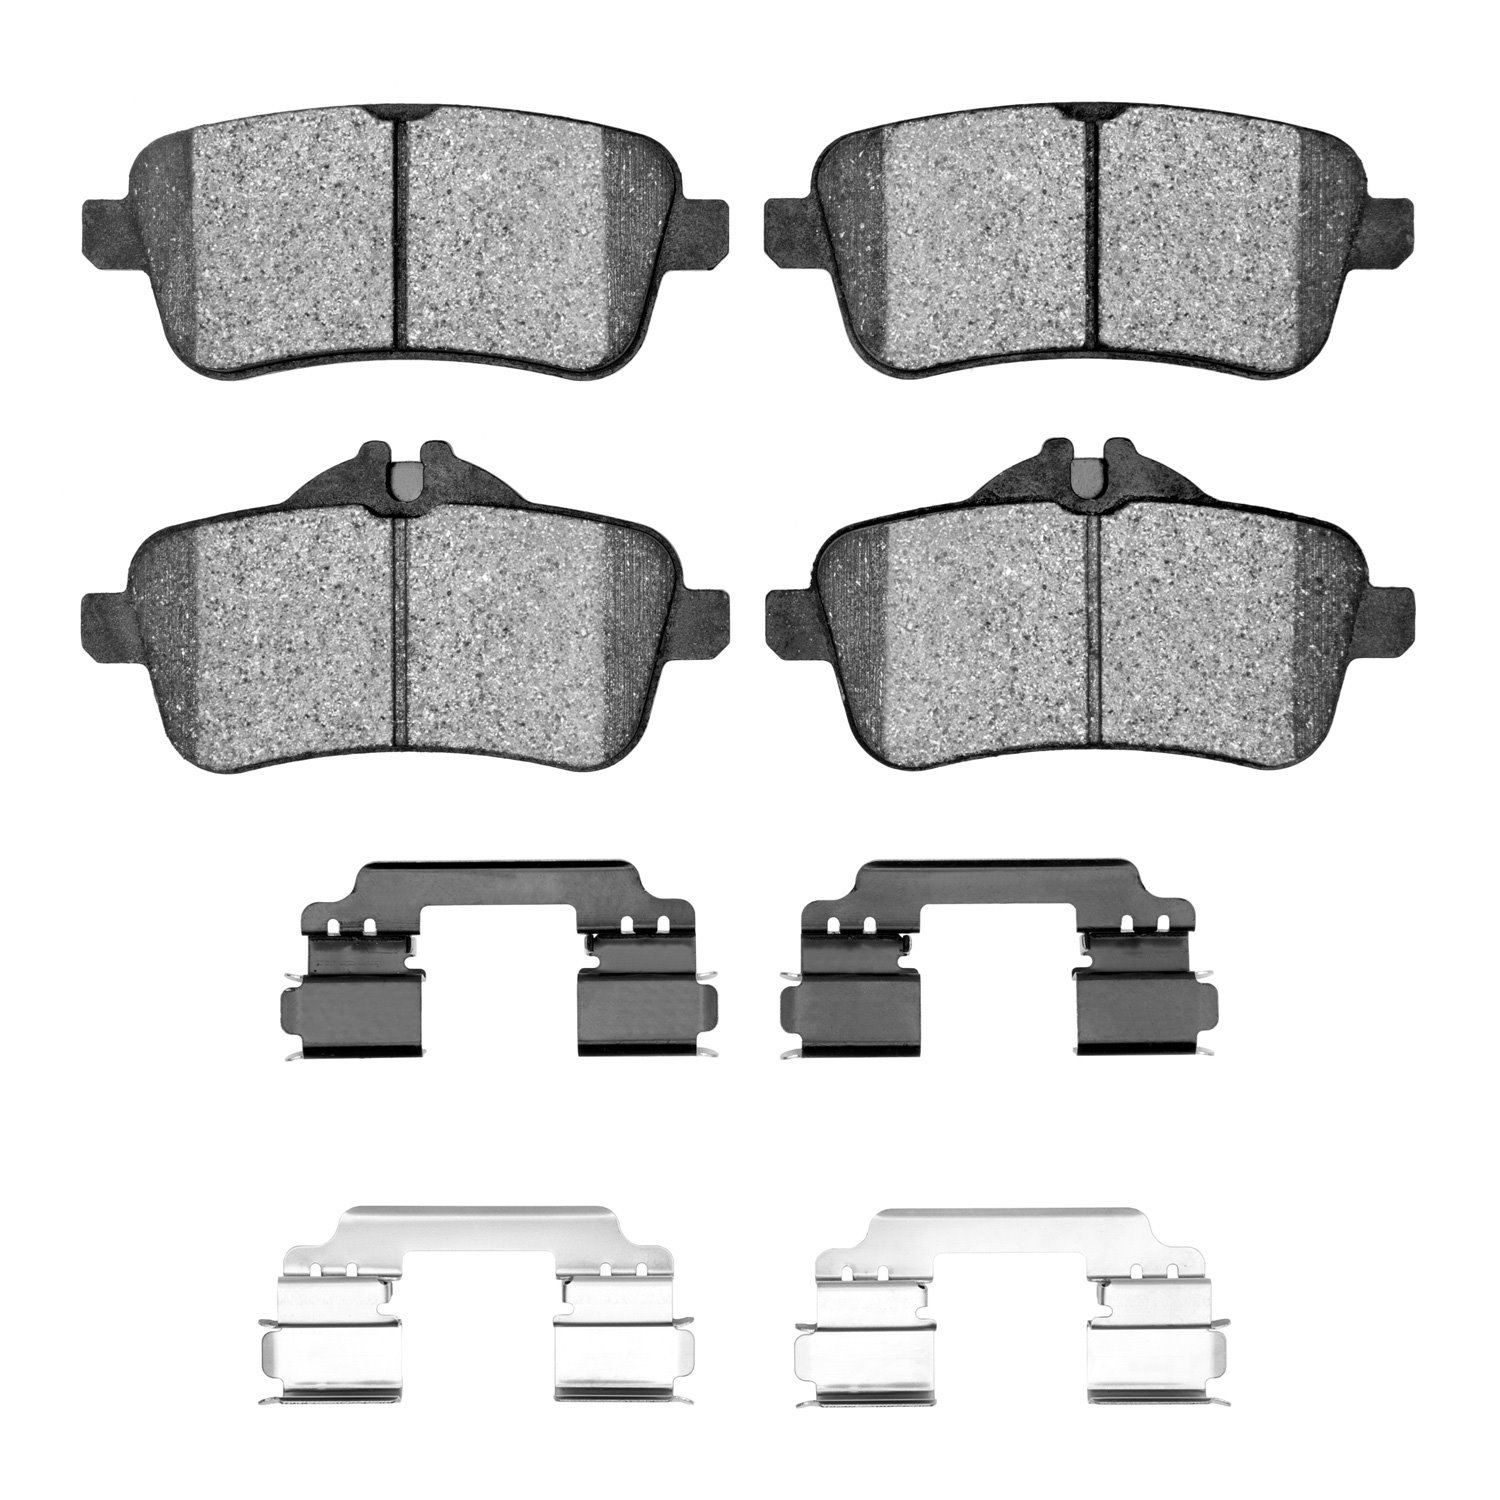 1311-1630-23 3000-Series Semi-Metallic Brake Pads & Hardware Kit, 2012-2019 Mercedes-Benz, Position: Rear